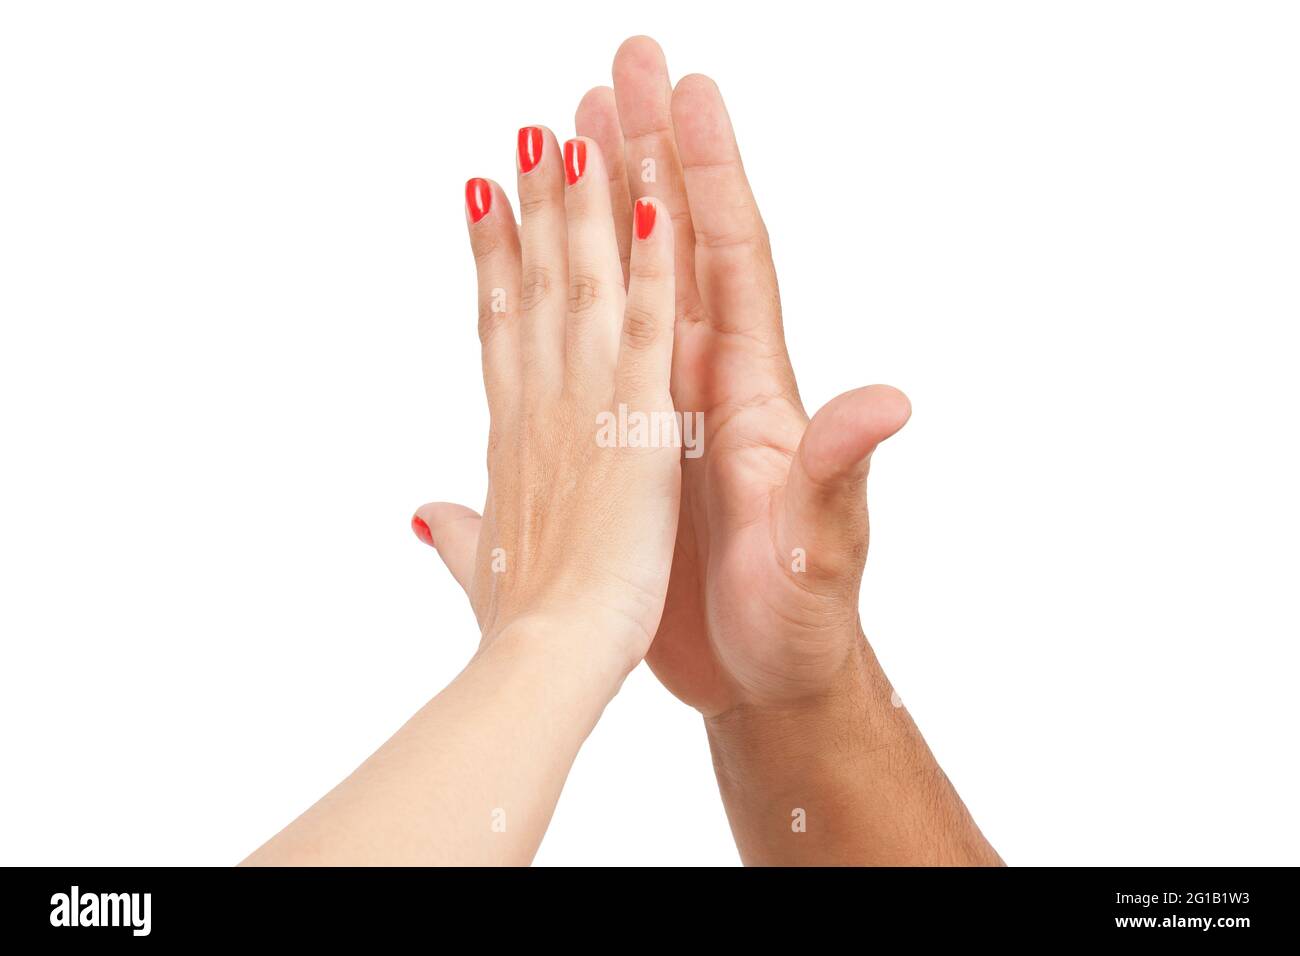 Uomo e donna mano palma a palma. Foto Stock